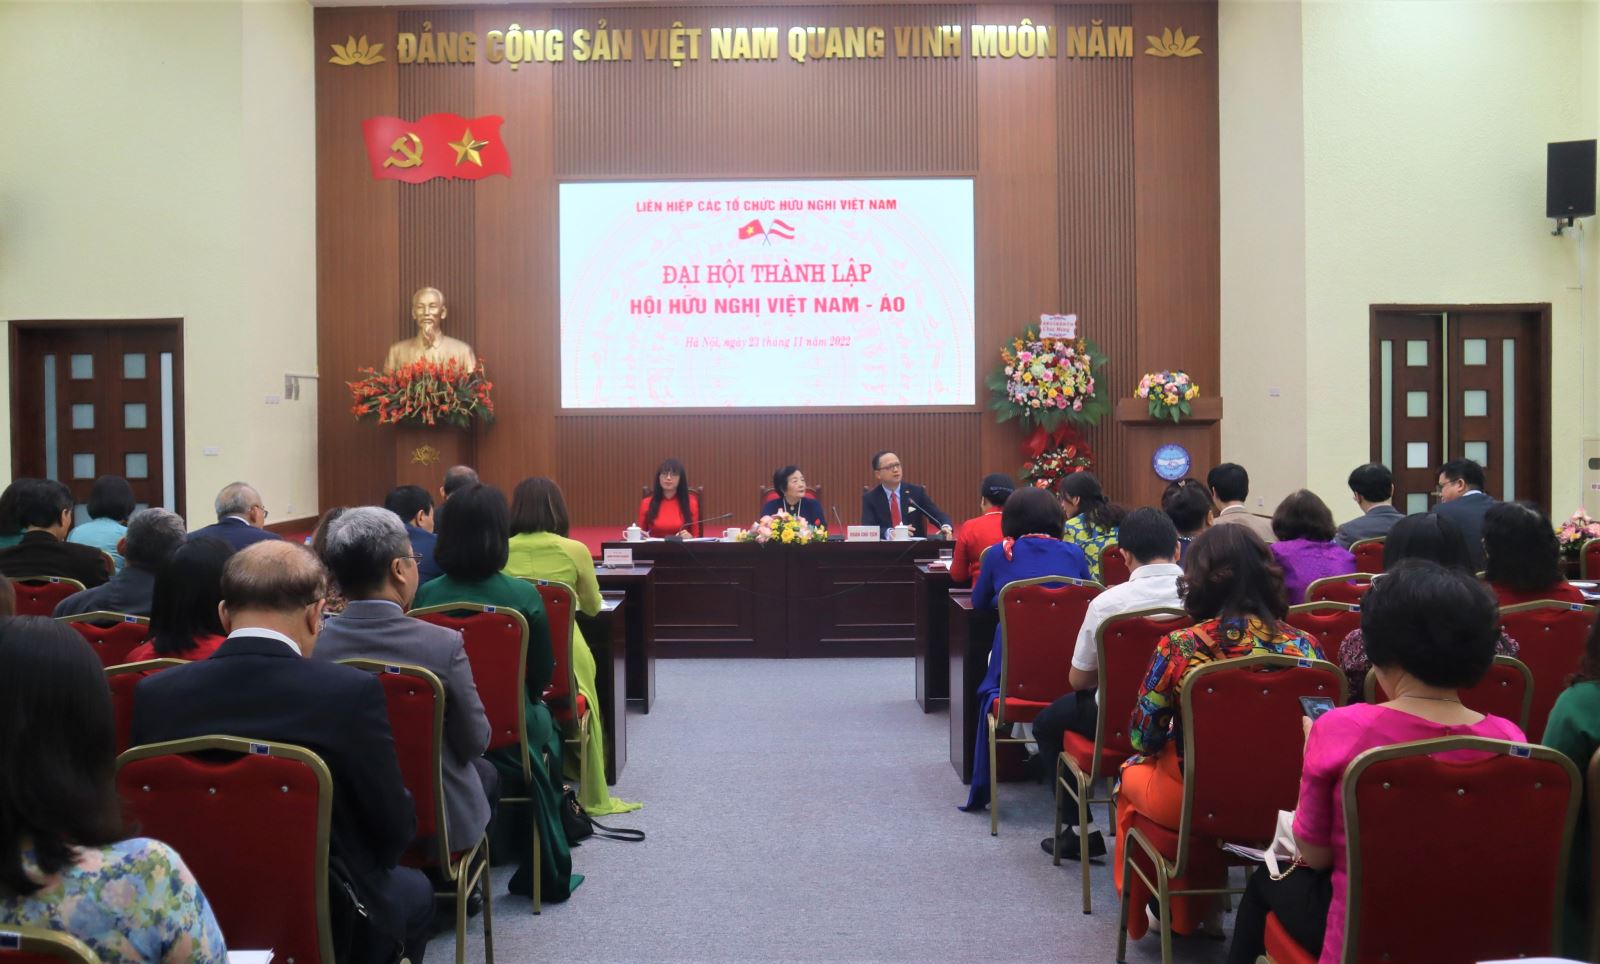 Đại hội thành lập Hội Hữu nghị Việt Nam - Áo